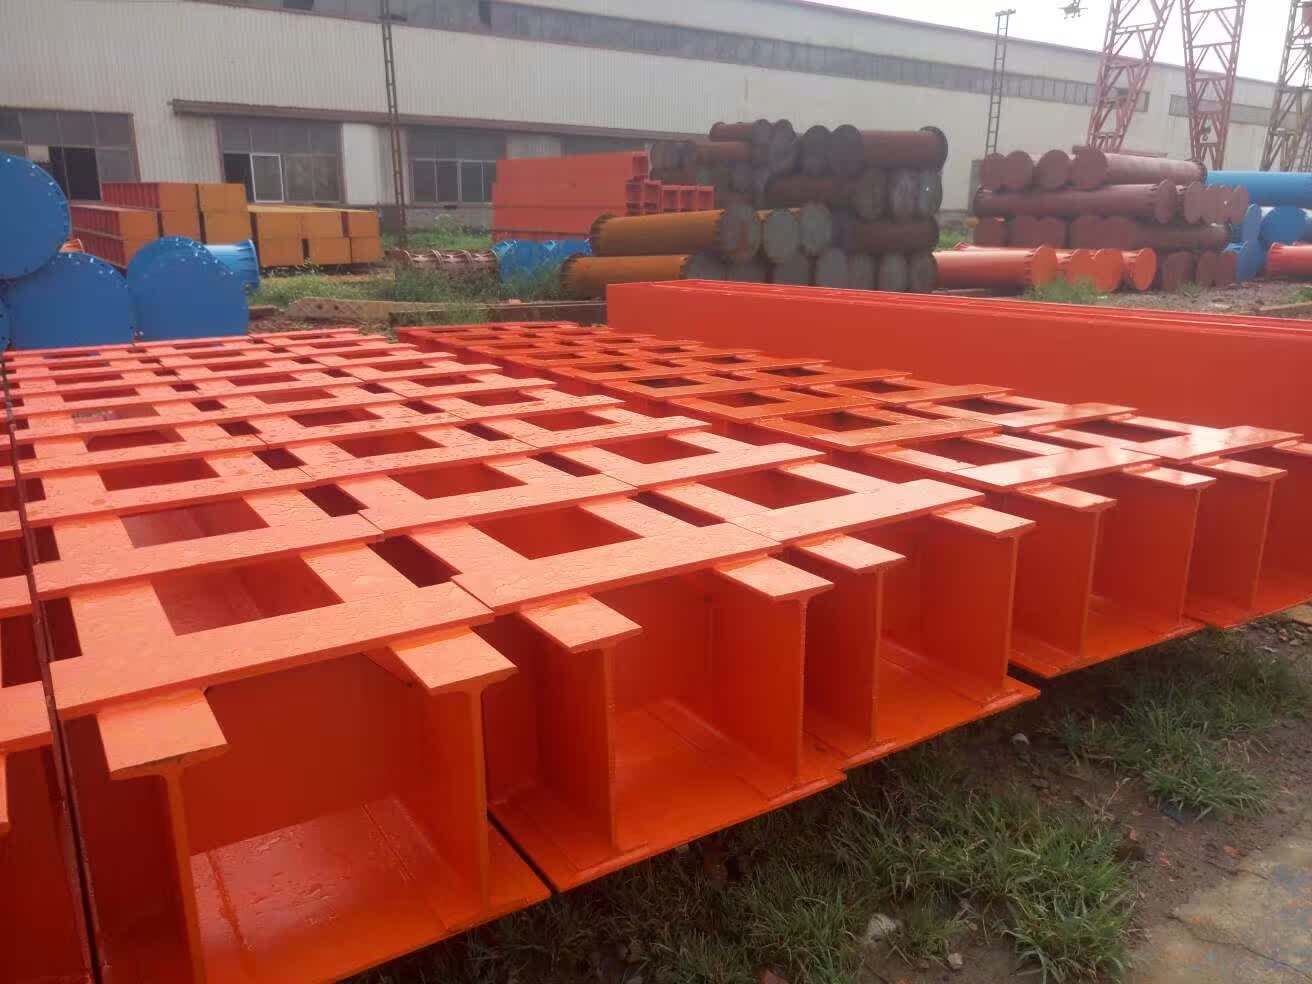 上海锦富建设工程有限公司:钢板桩租赁